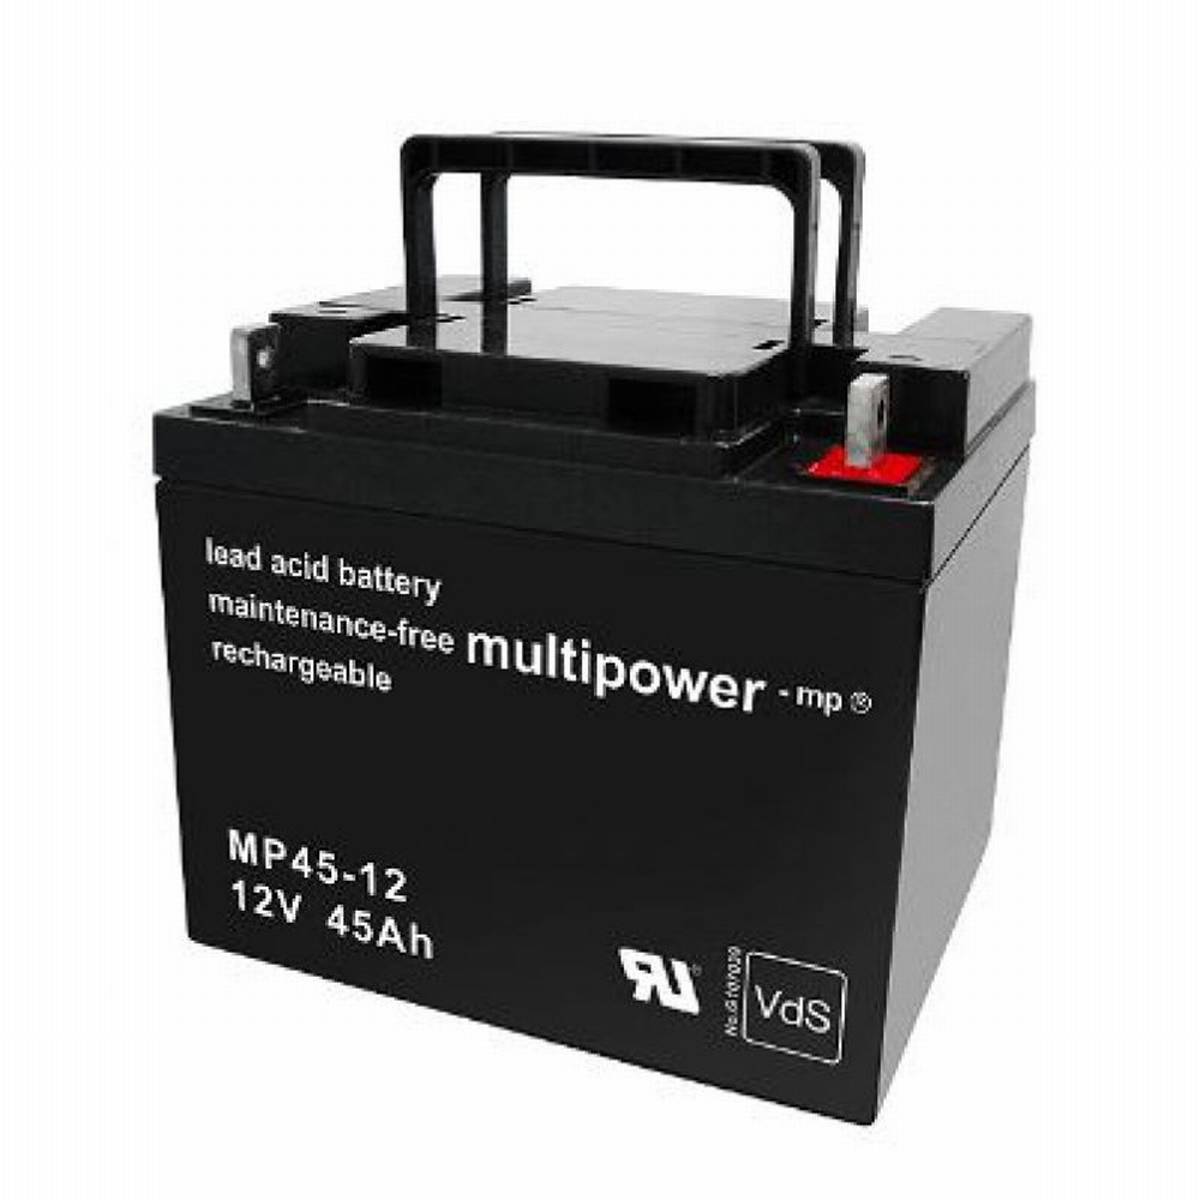 Multipower MP45-12 12V 45Ah batteria al piombo AGM con approvazione VdS